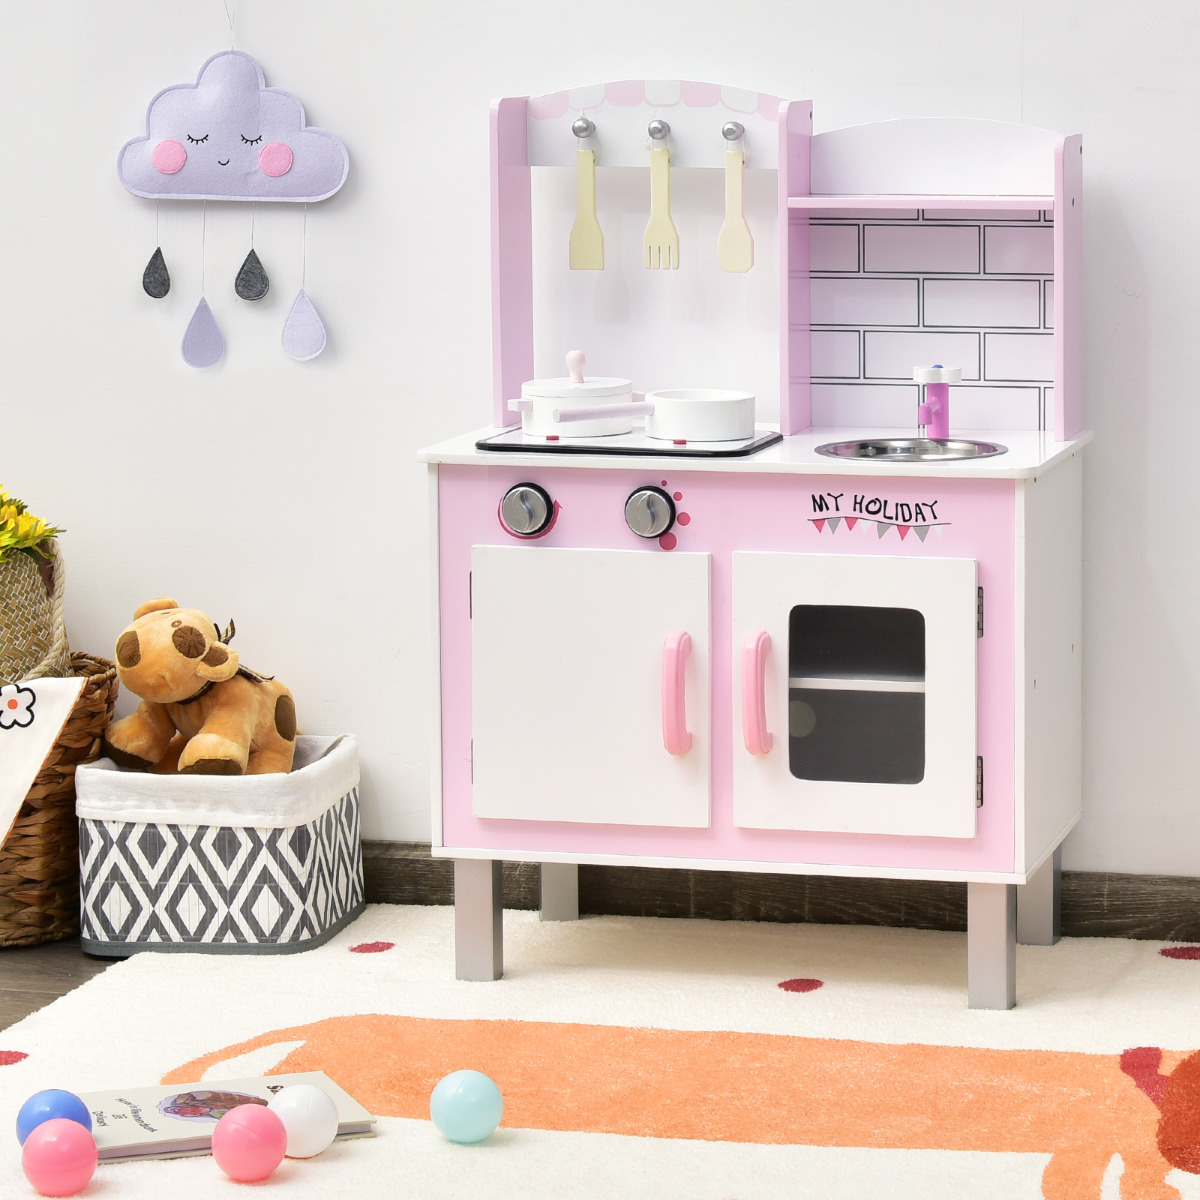 Kids Kitchen Playset Kids Kitchen Toy Kitchen voor Peuters 55 x 30 x 80cm Roze + Wit